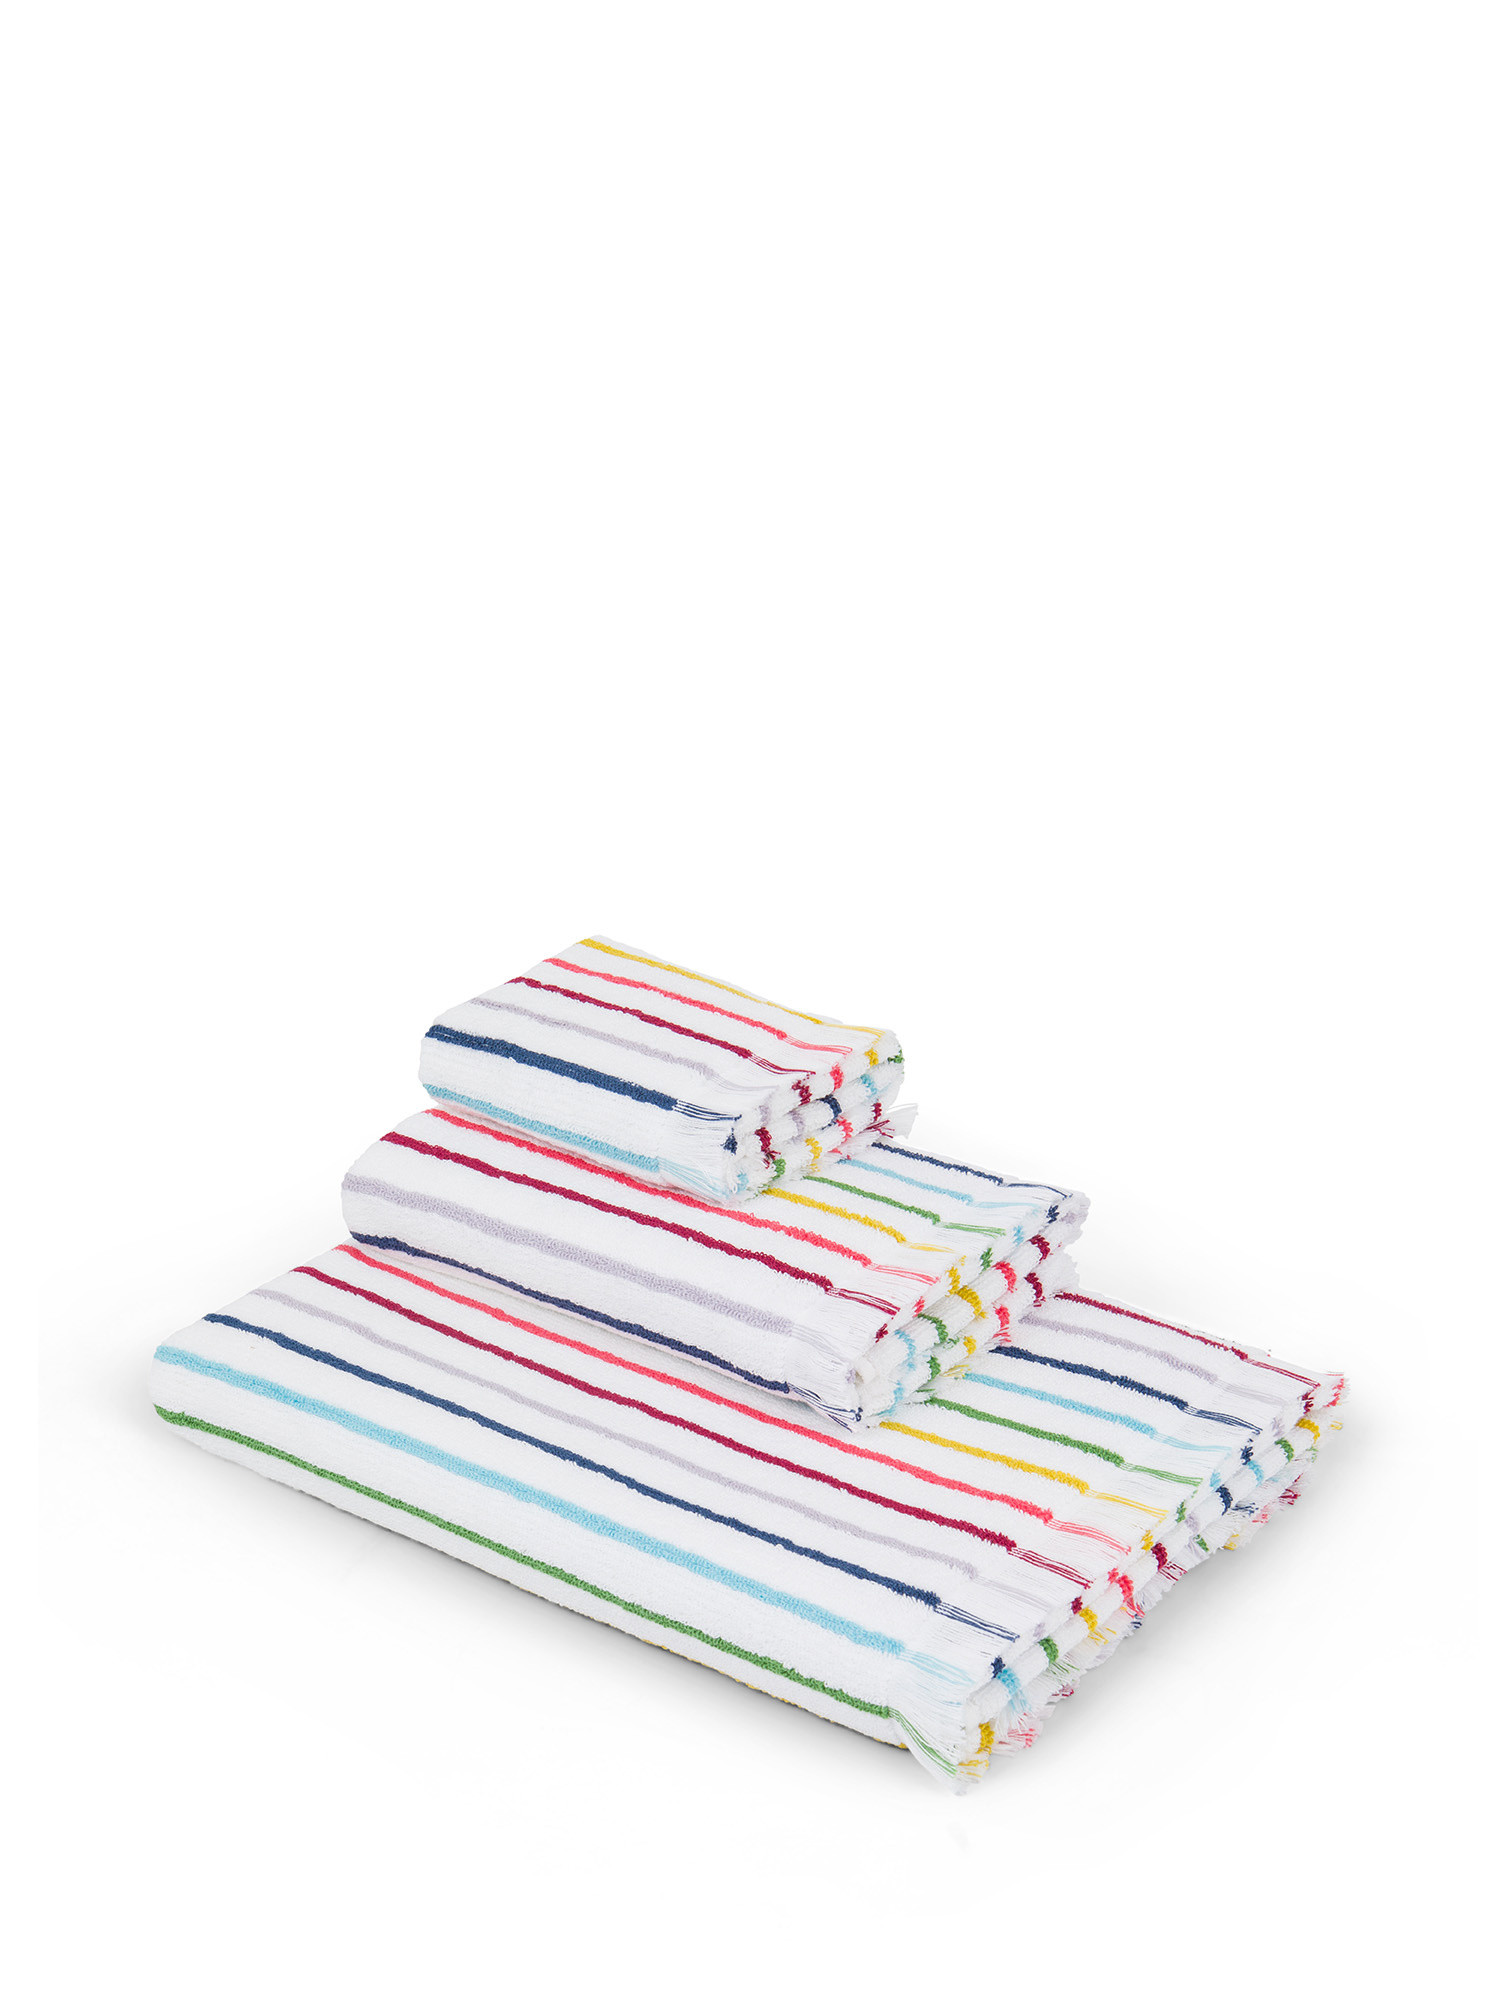 Asciugamano in spugna di cotone a righe, Multicolor, large image number 0